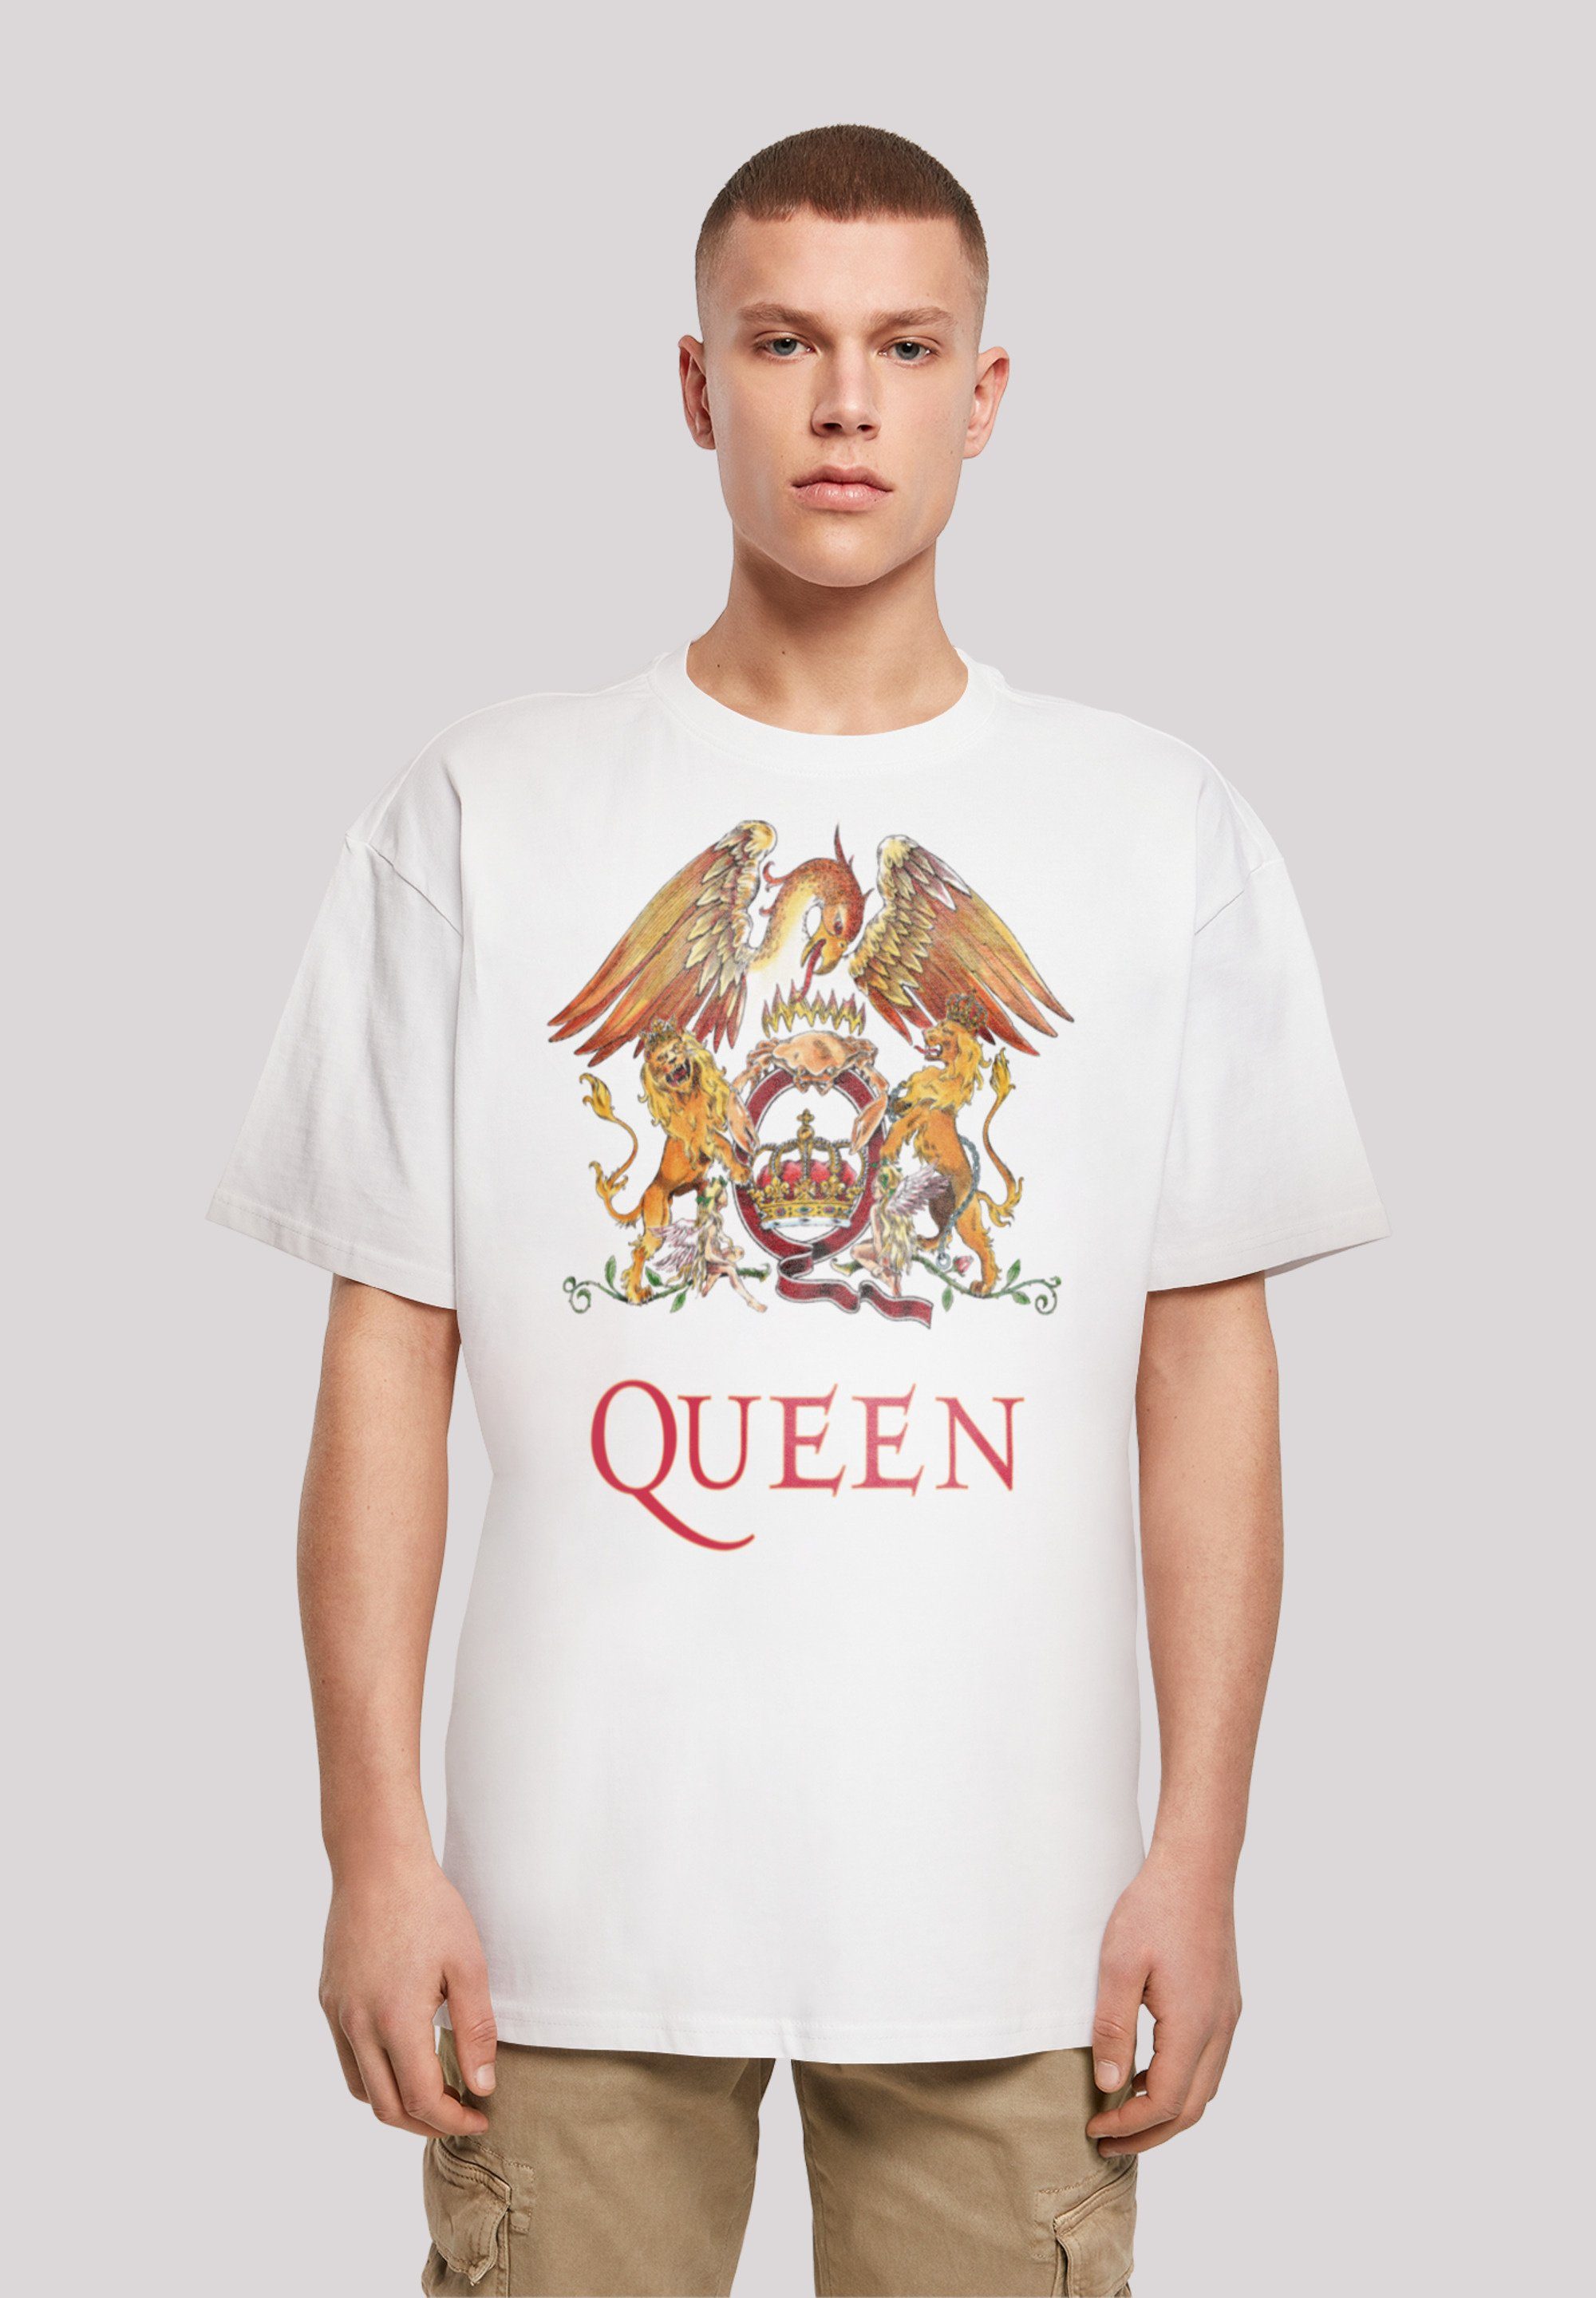 T-Shirt Black weiß F4NT4STIC Print Crest Classic Rockband Queen